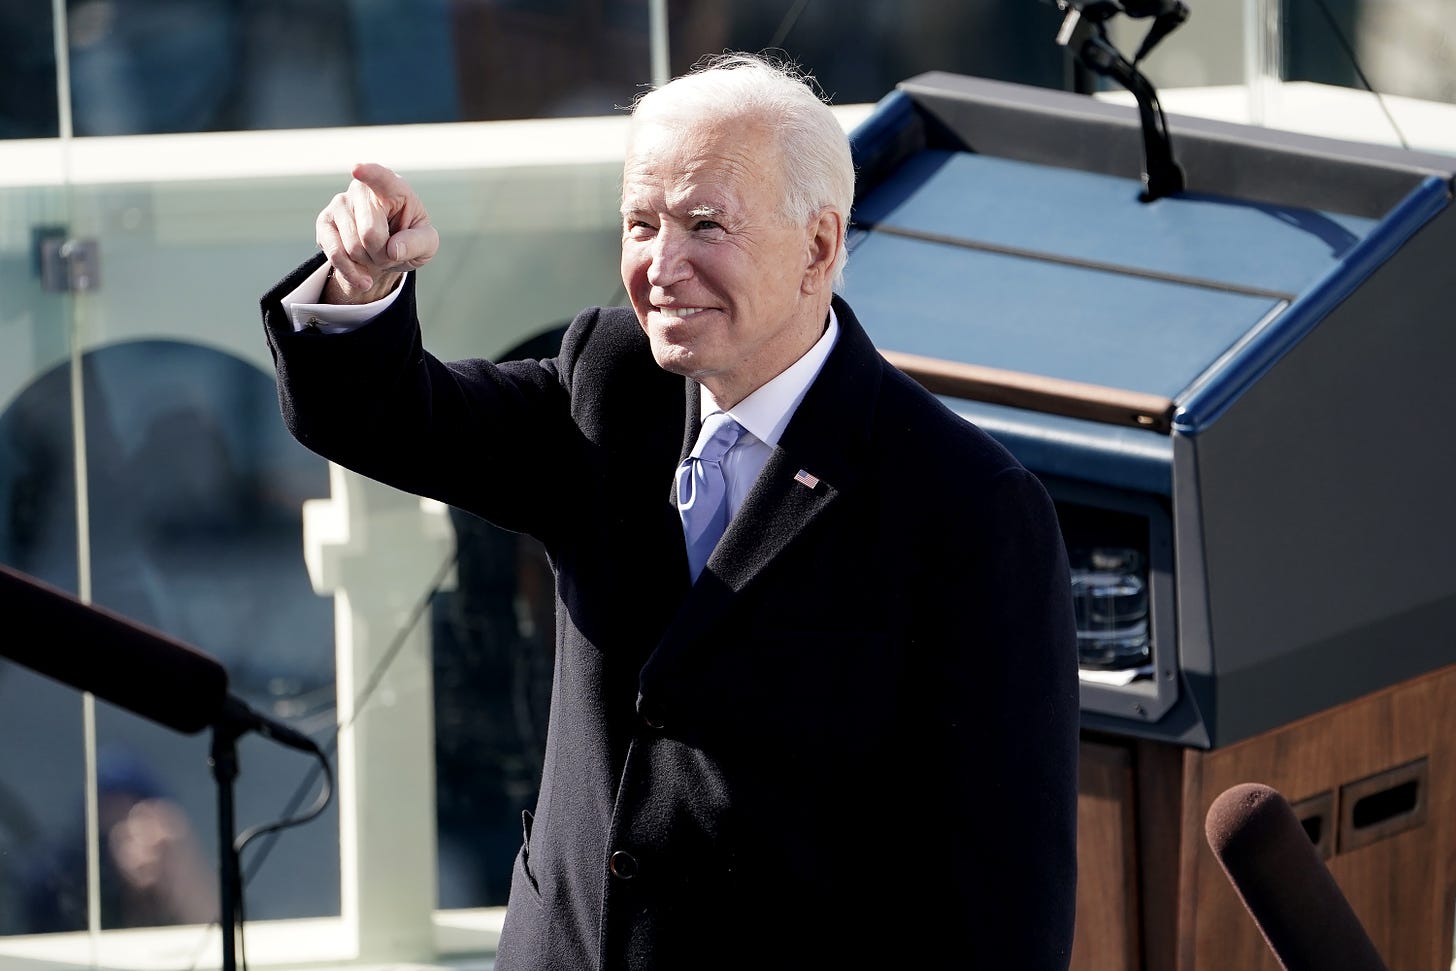 Biden at his inauguration